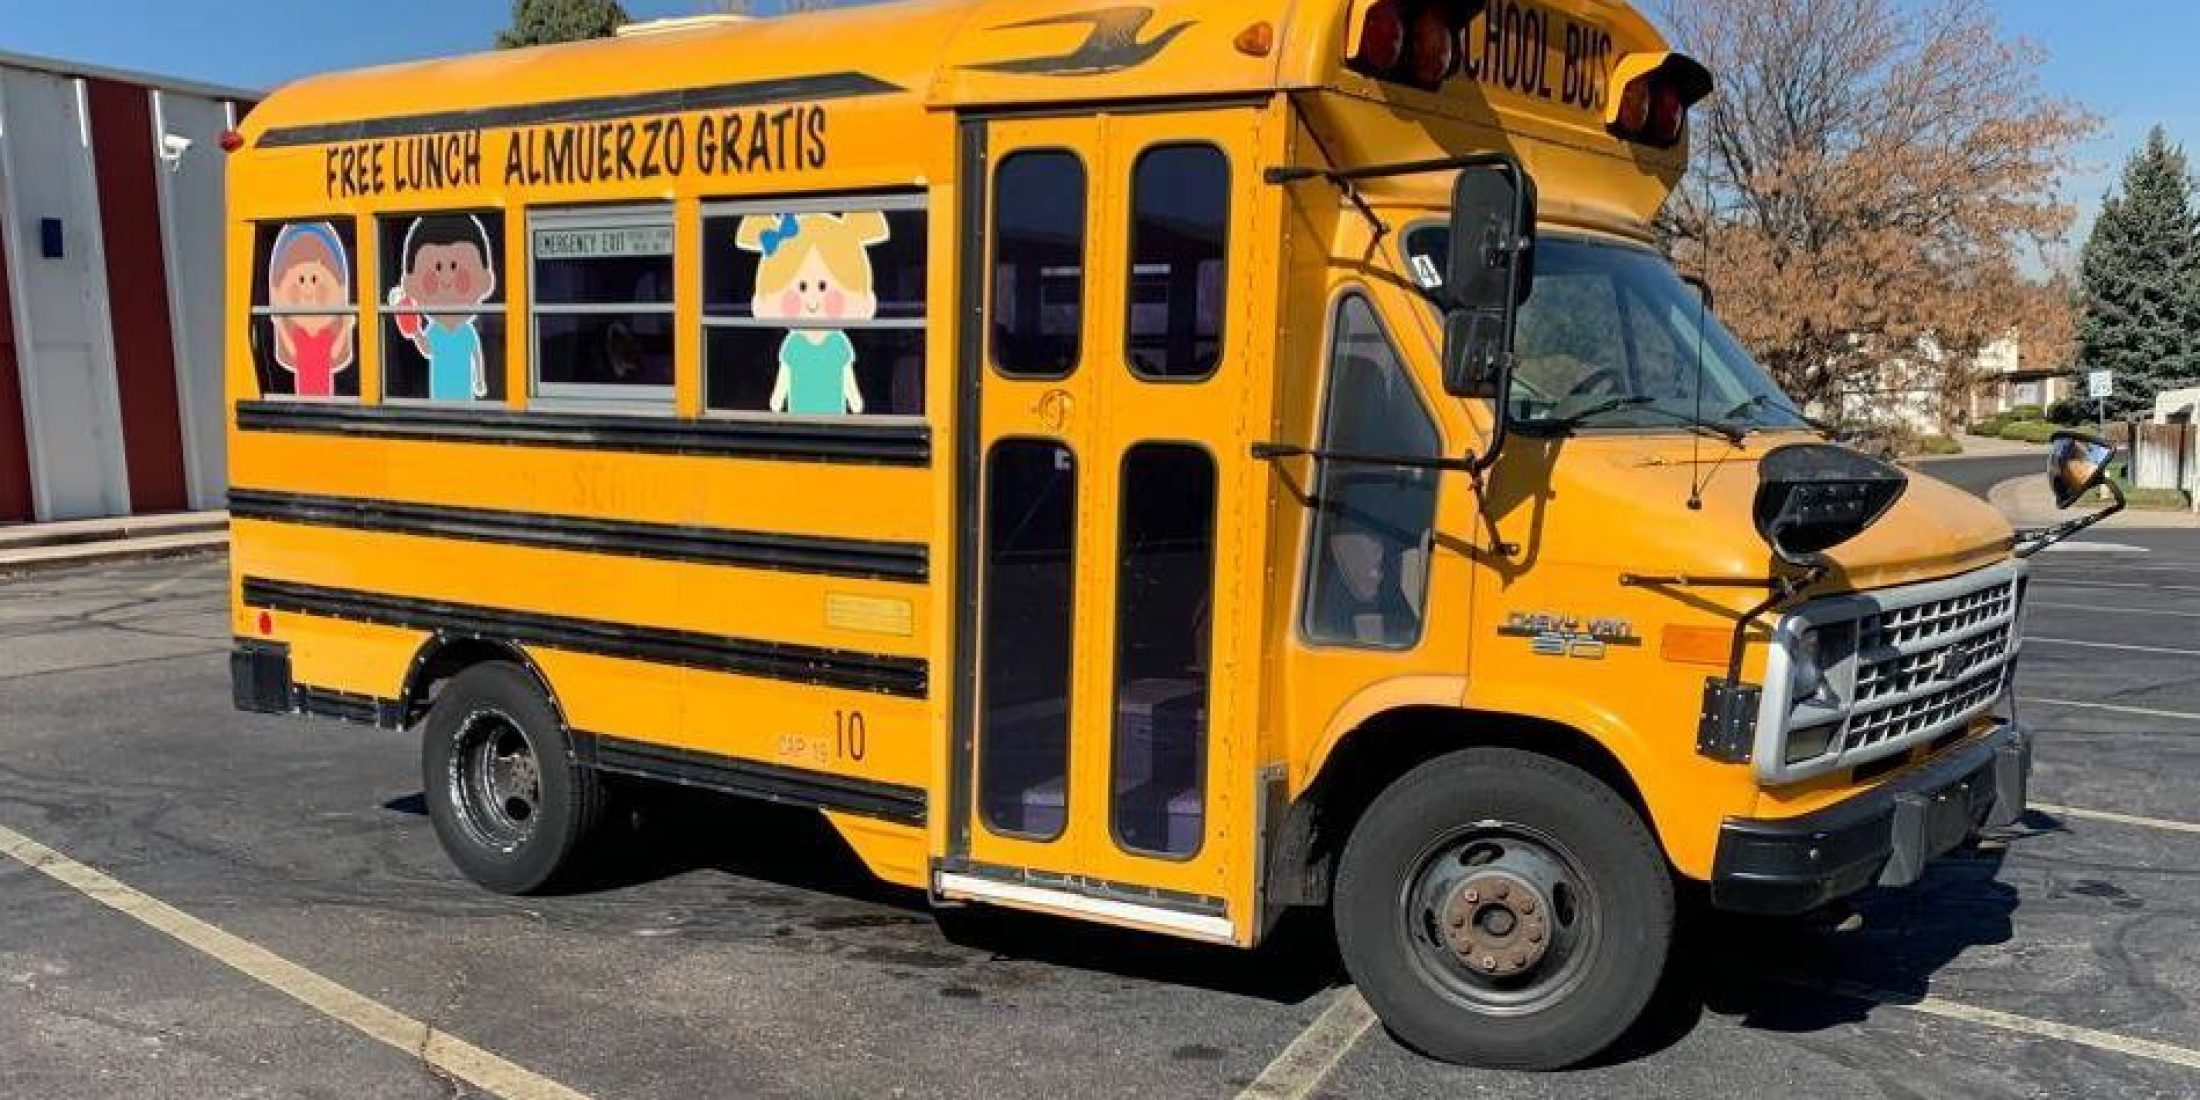 Schoolbus